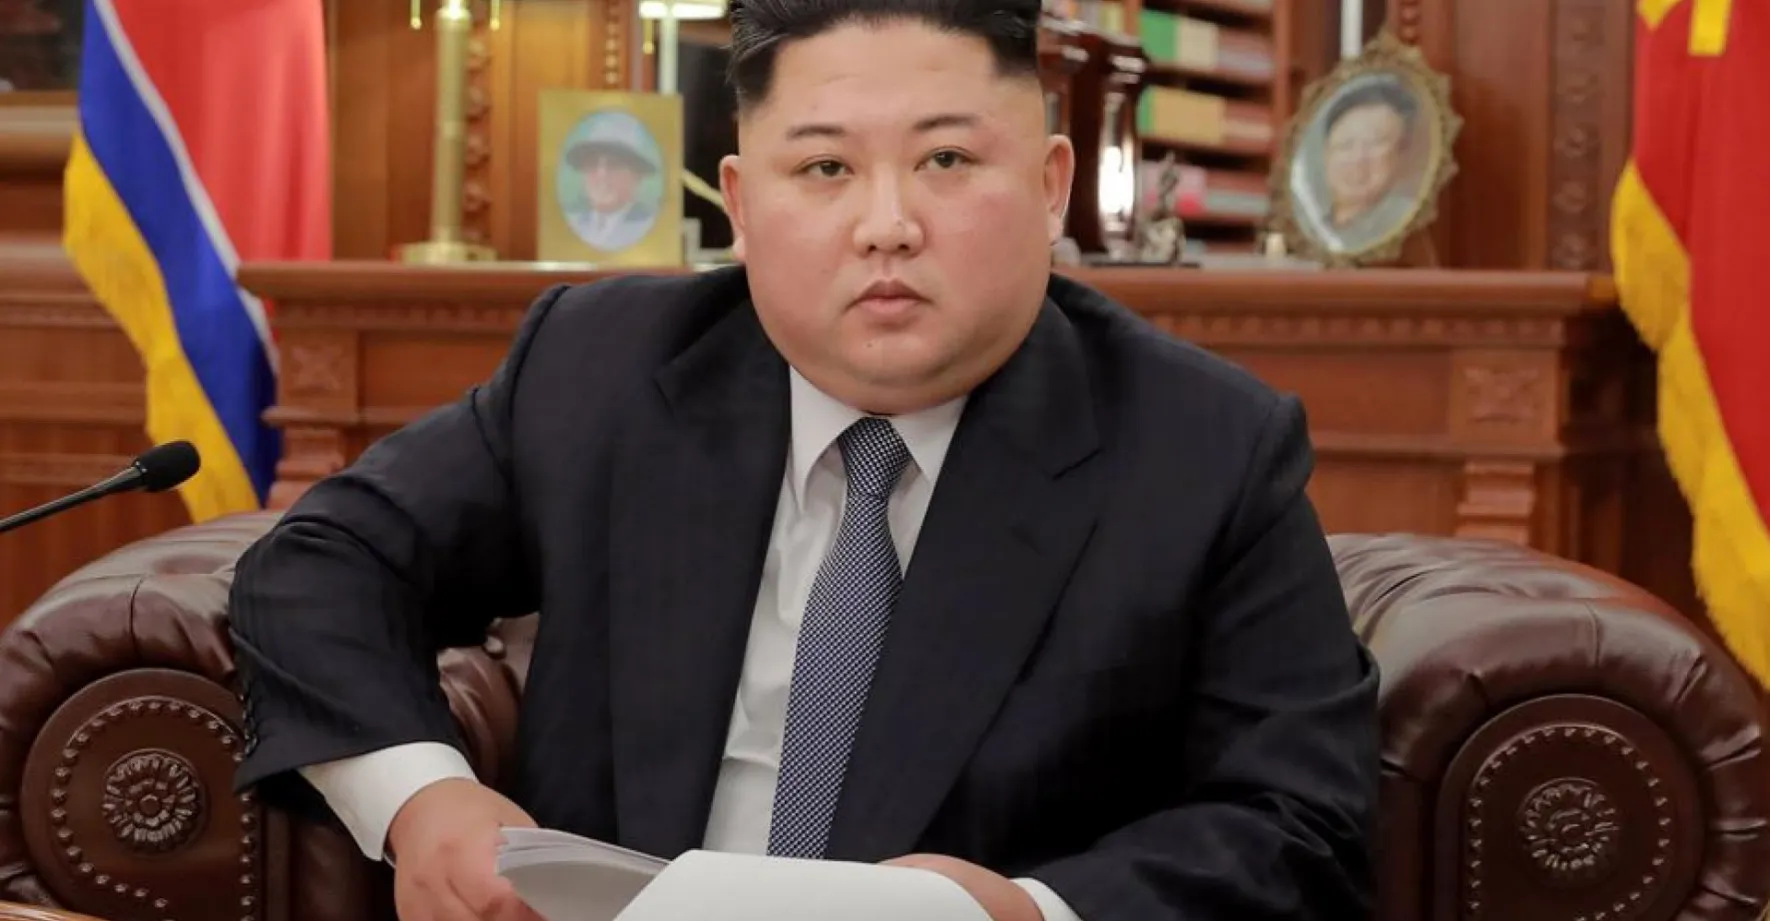 Kim hrozí světu. KLDR odpálila raketu, která by mohla zasáhnout i USA